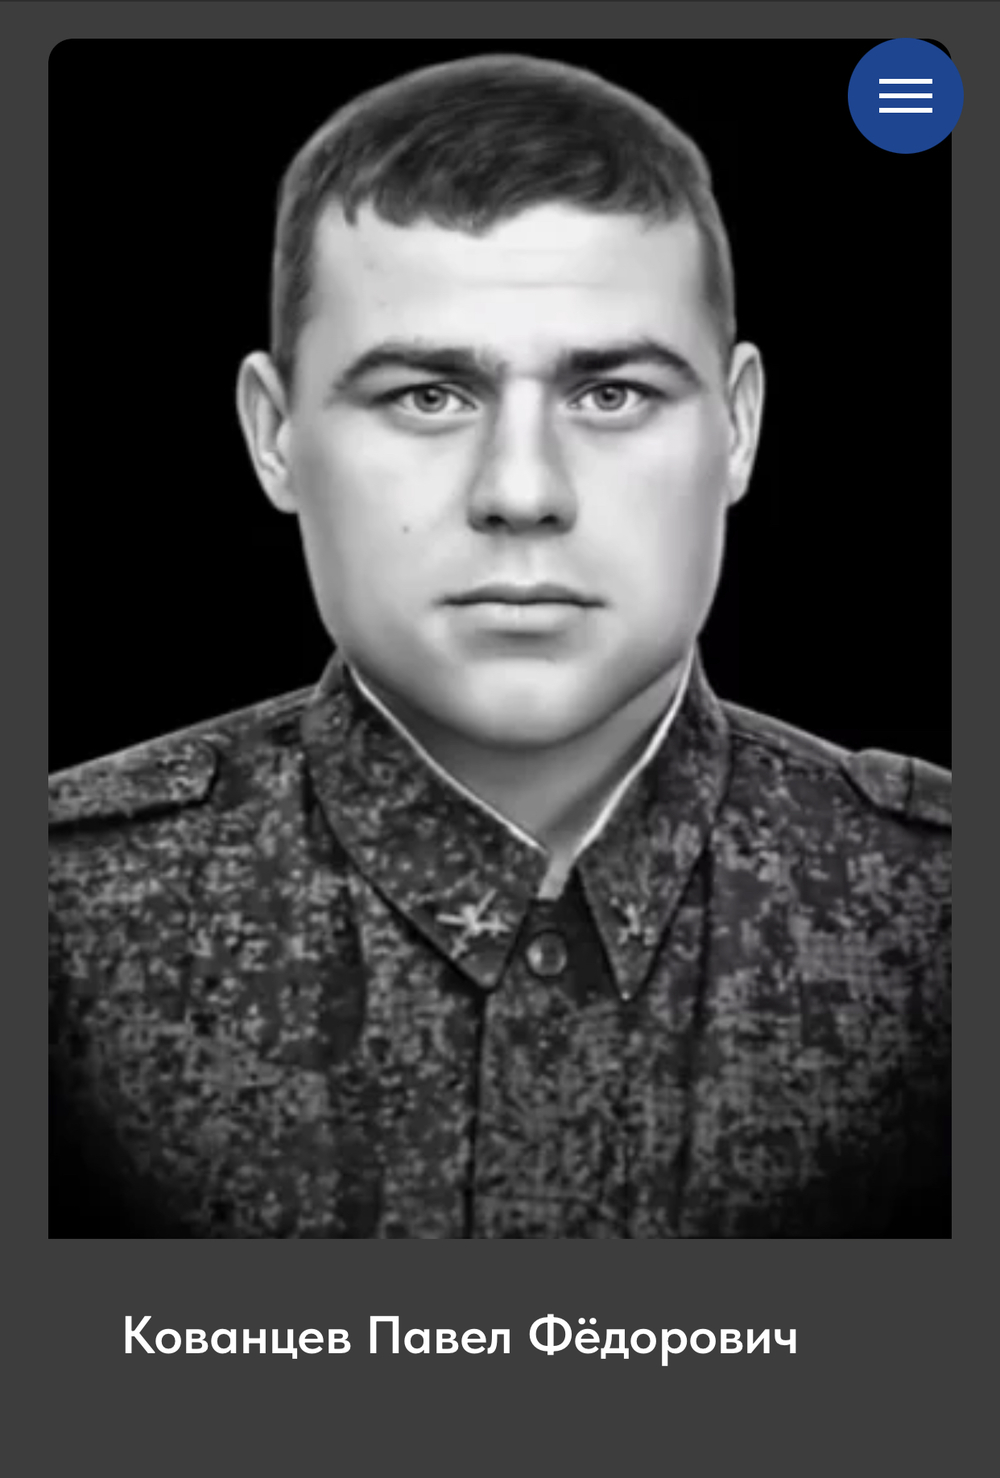 Вечная память Героям: фотографии нижегородцев, погибших при проведении СВО